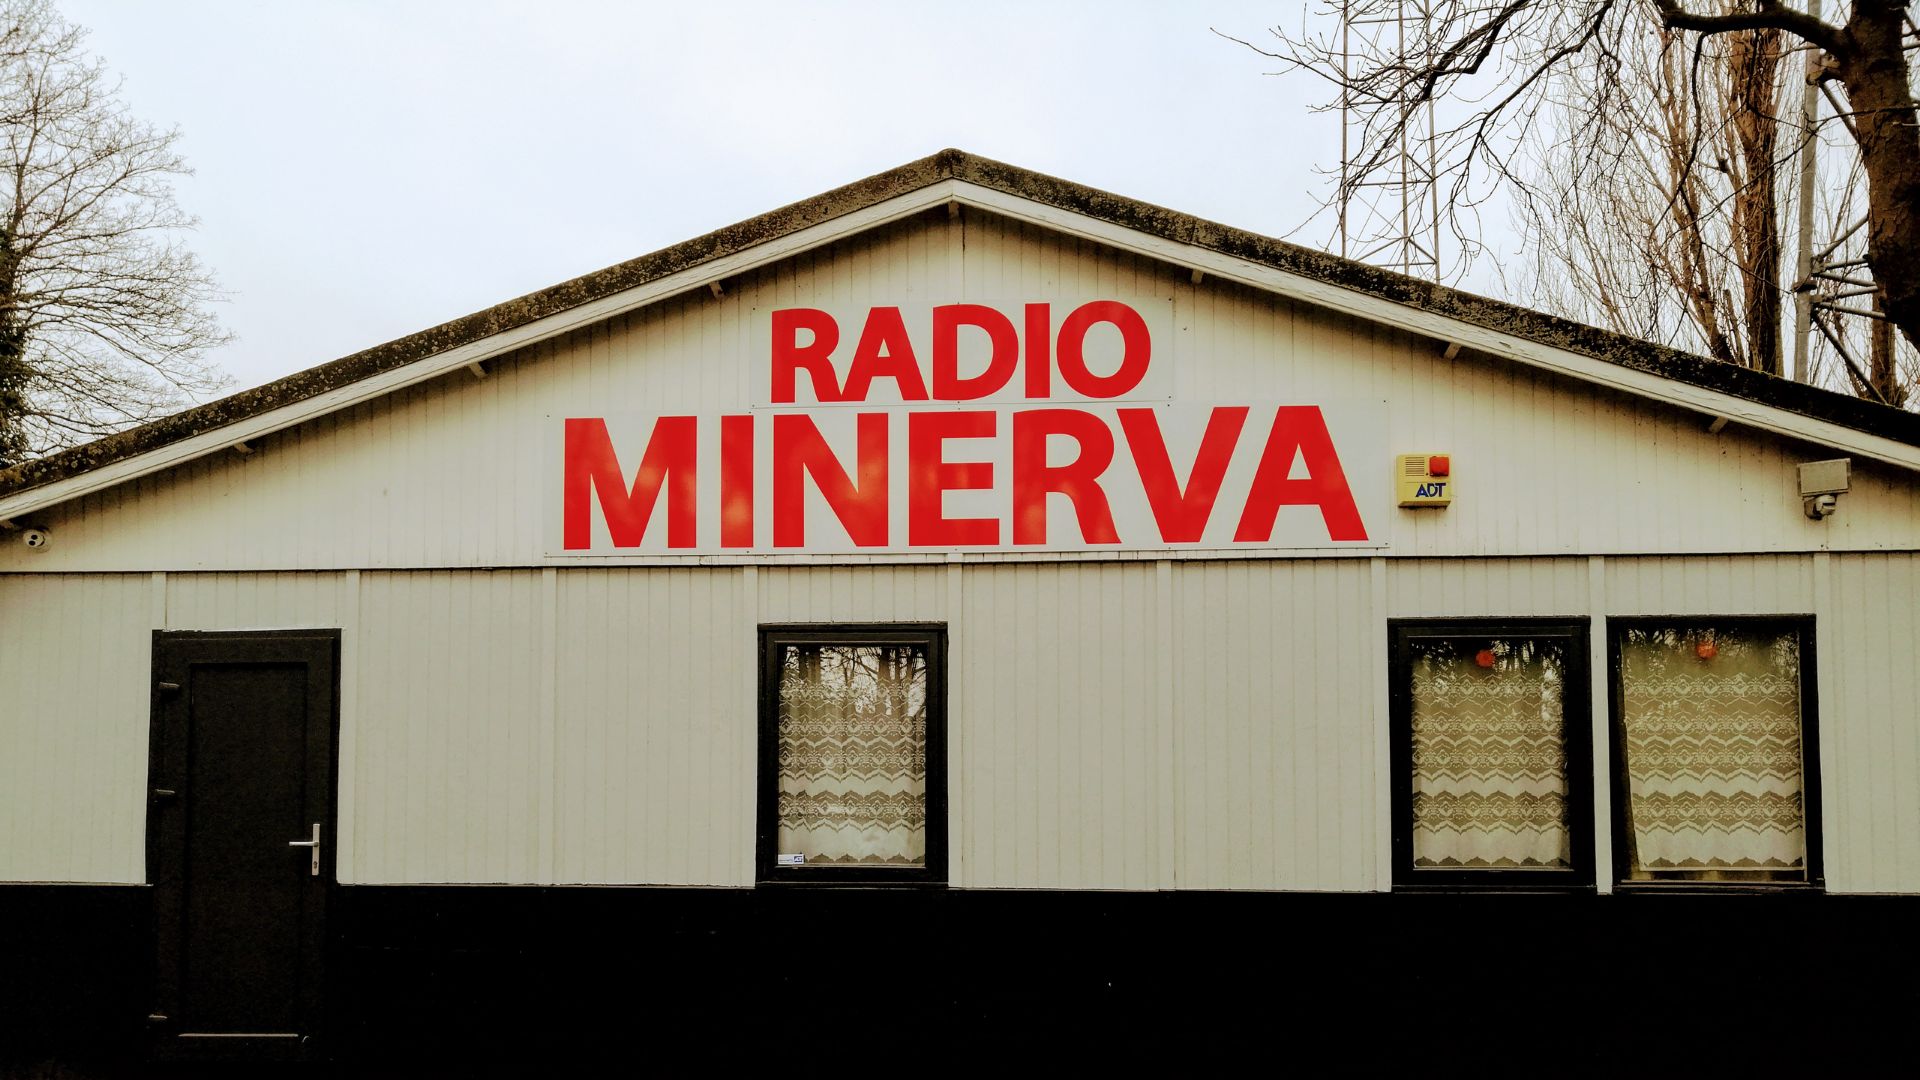 Radio Minerva est diffusée depuis un chalet de 70 m2 situé à deux pas de la plage anversoise de Saint-Anne.